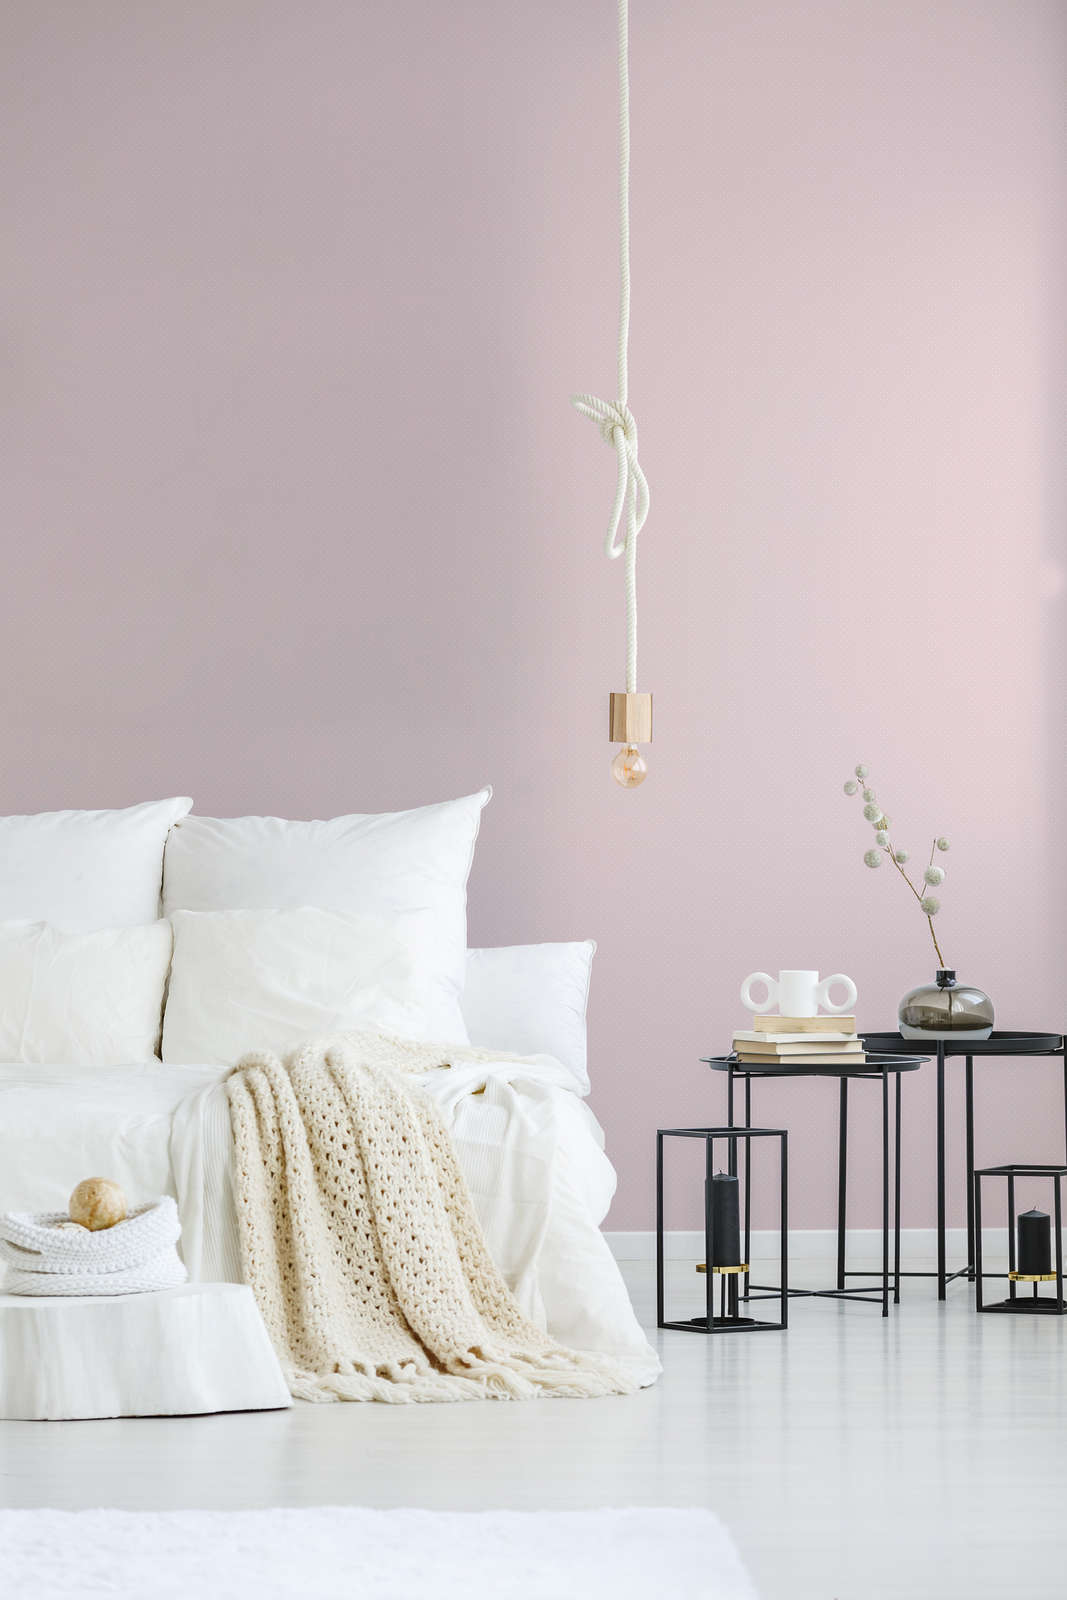             Onderlaag behang in landelijke stijl met kleine stippen - roze, wit
        